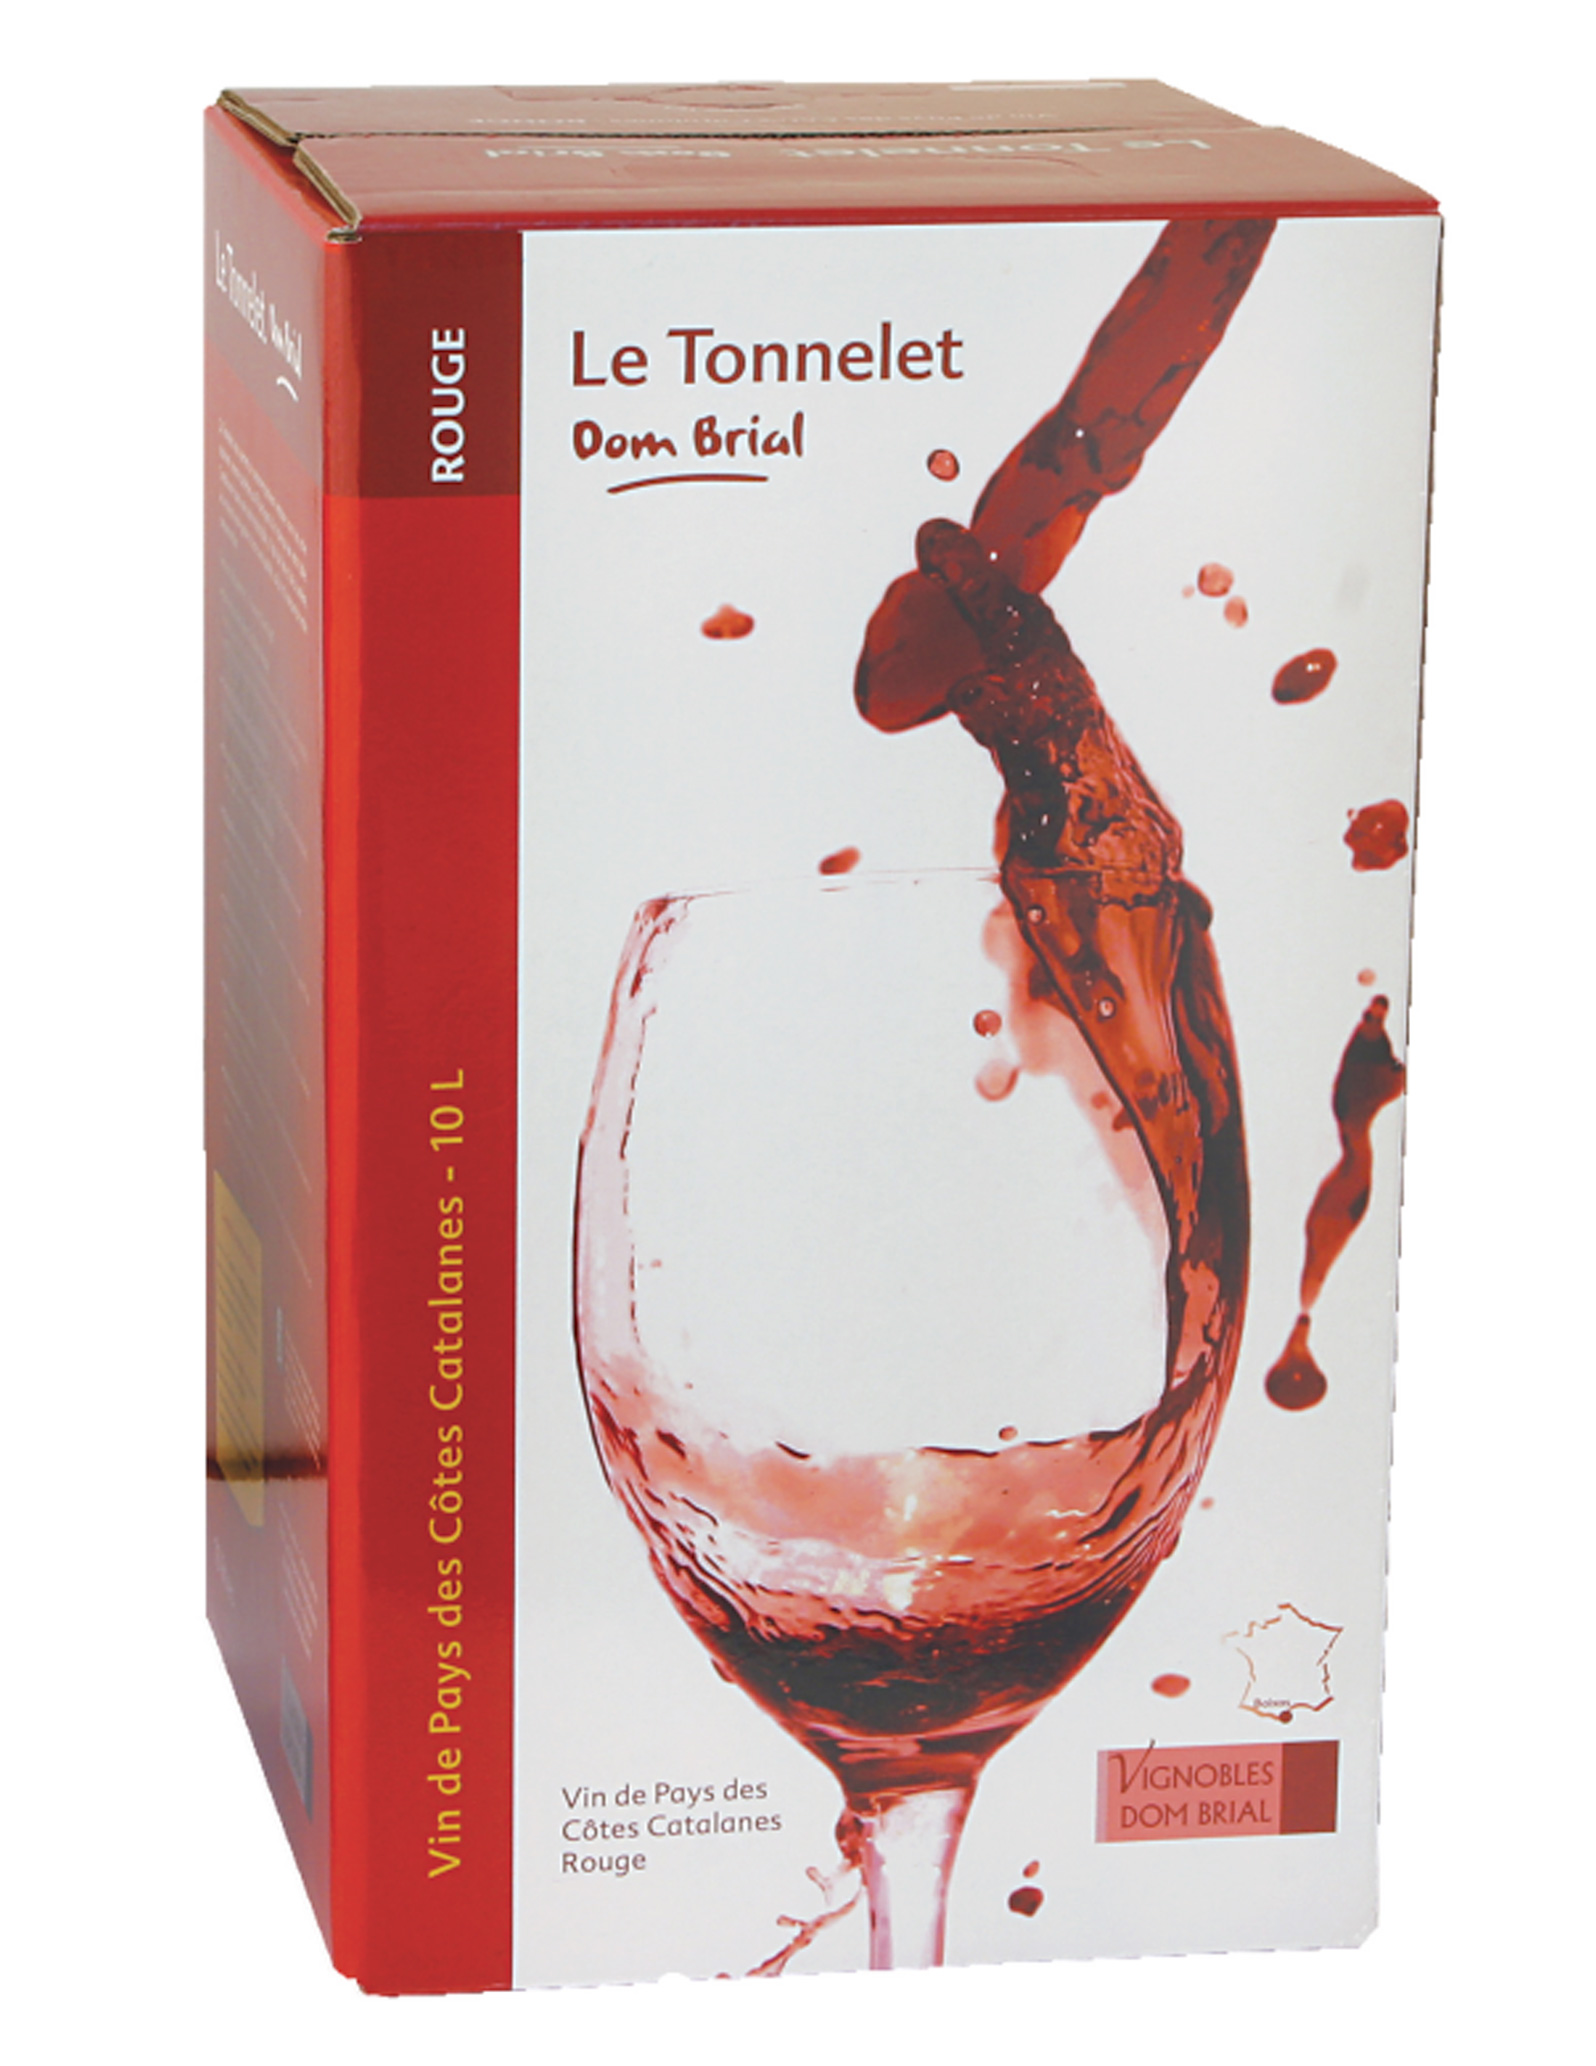 IGP Côtes Catalanes - Cubi de qualité - Le Tonnelet - 10L  - Domaine Dom Brial - ROUGE